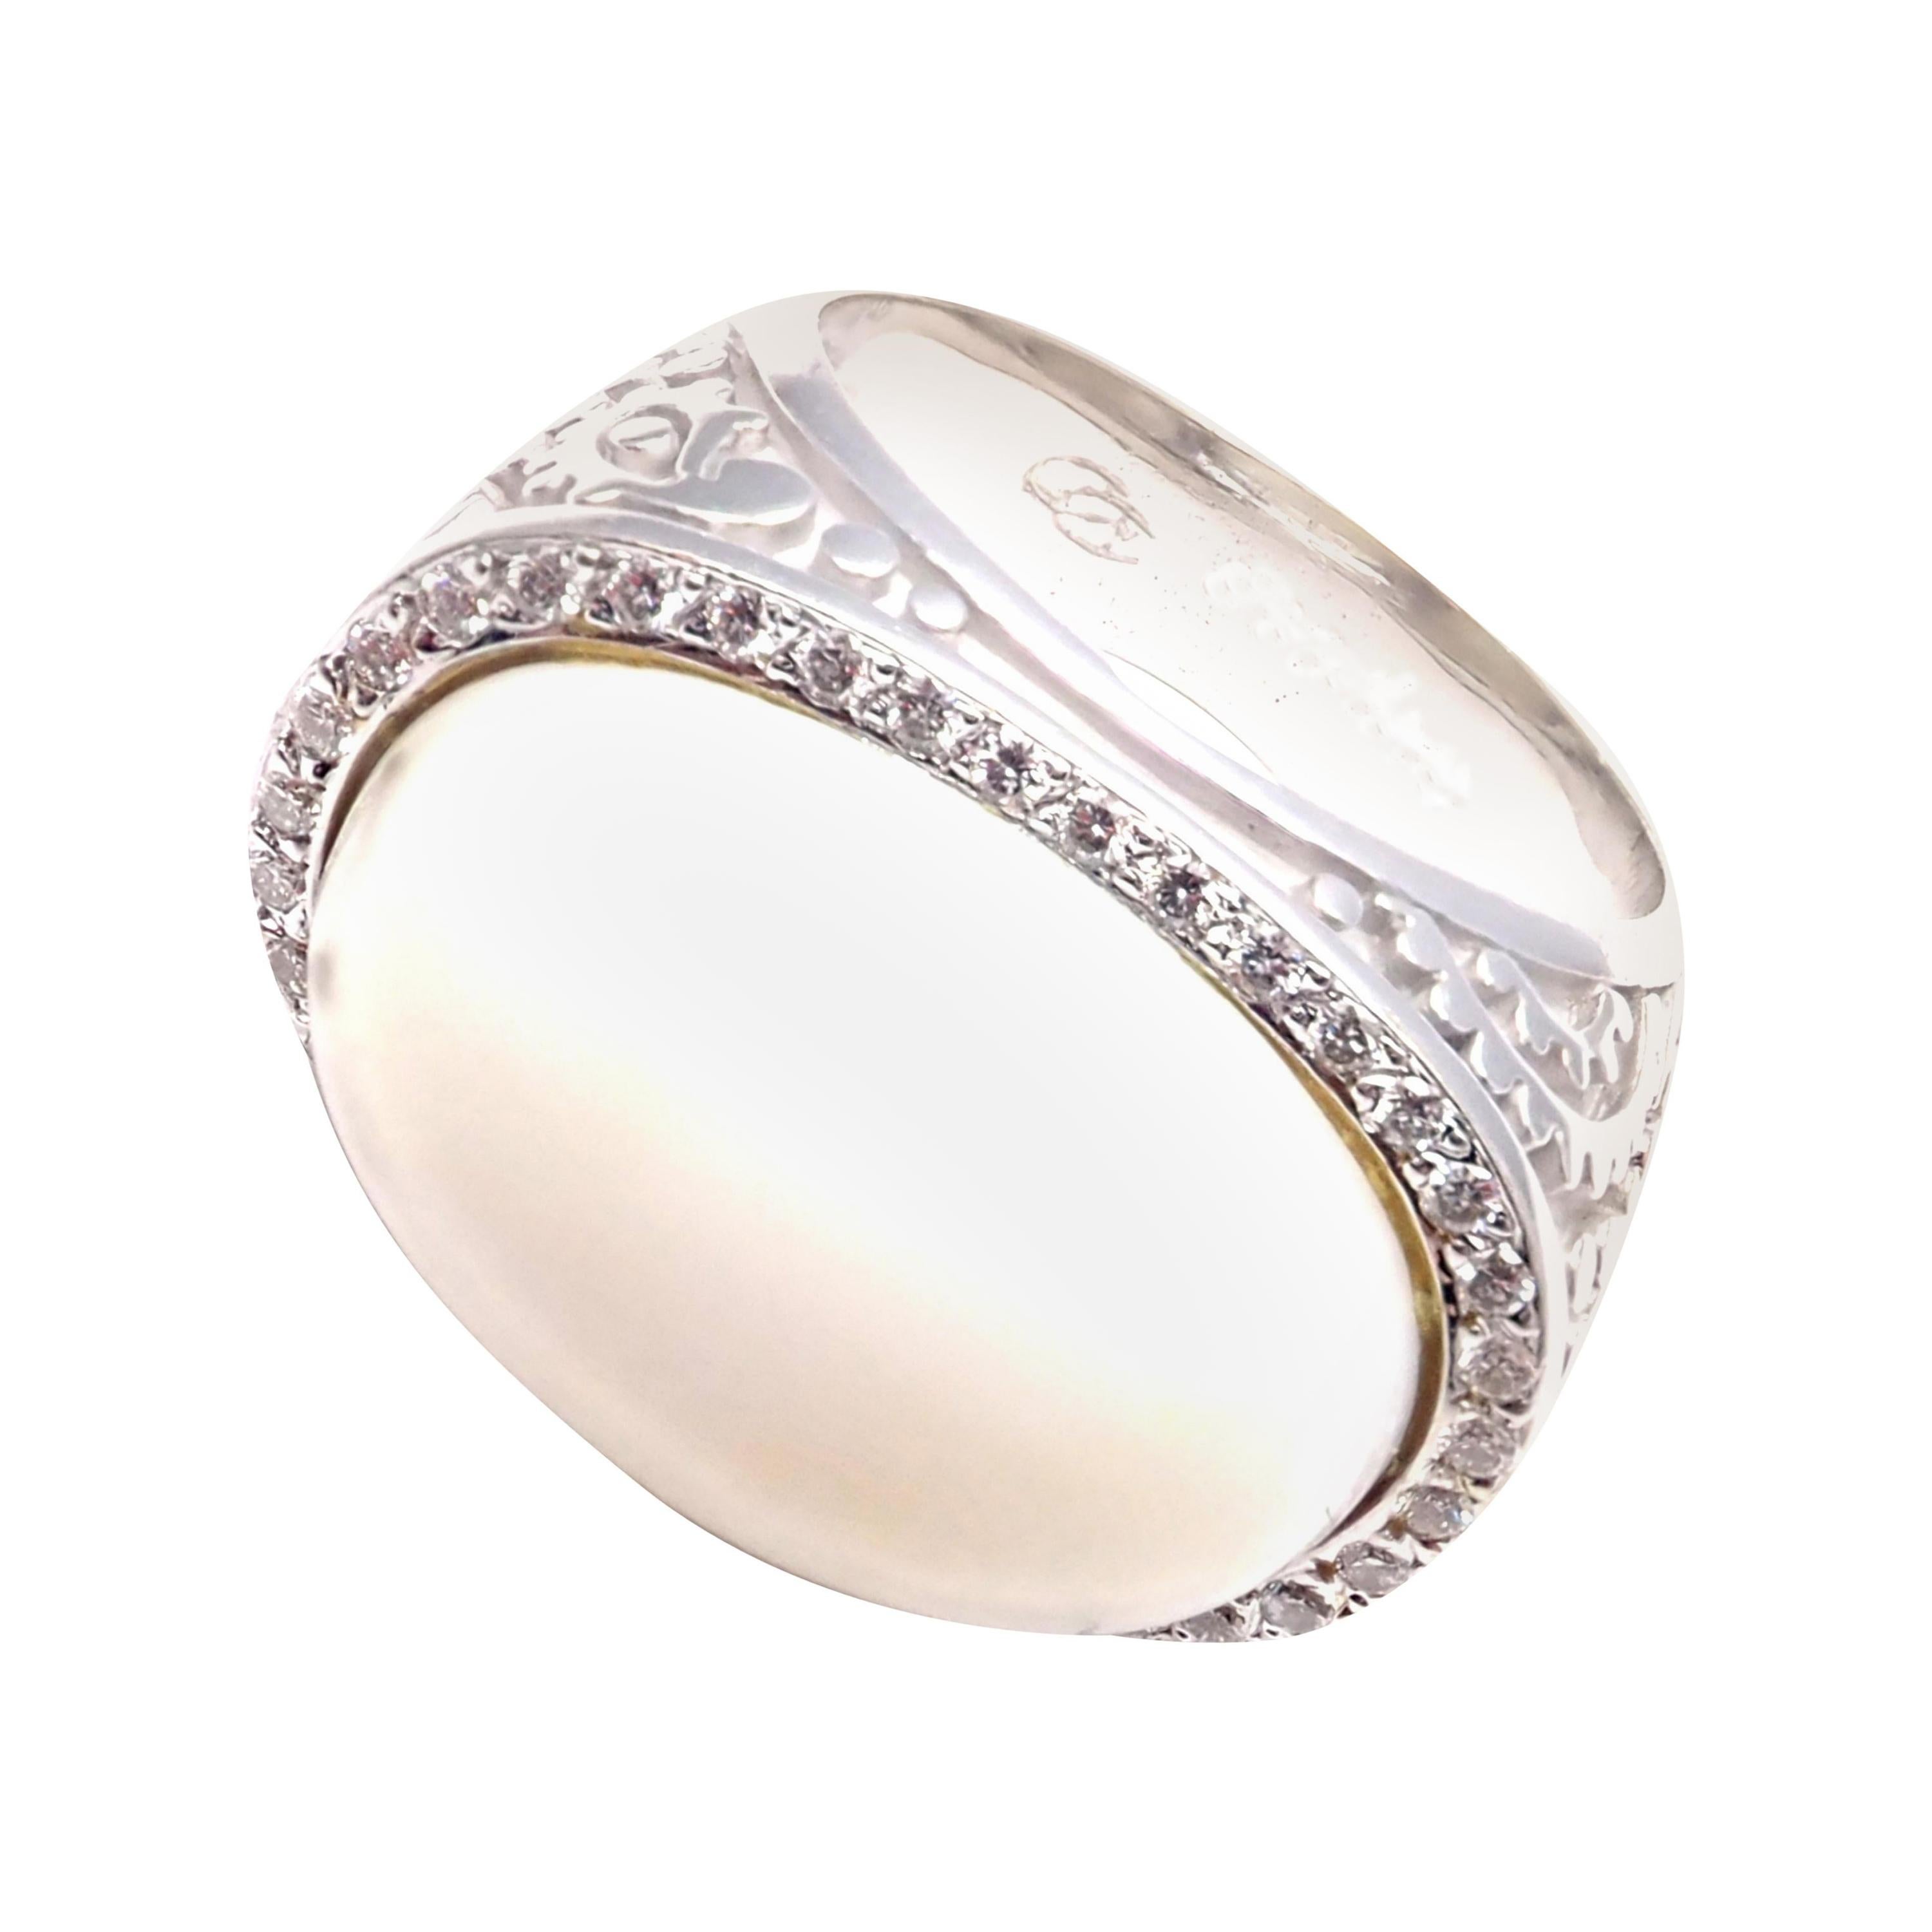 Carrera y Carrera's Aqua Ring 18k White Gold Diamonds White Agate